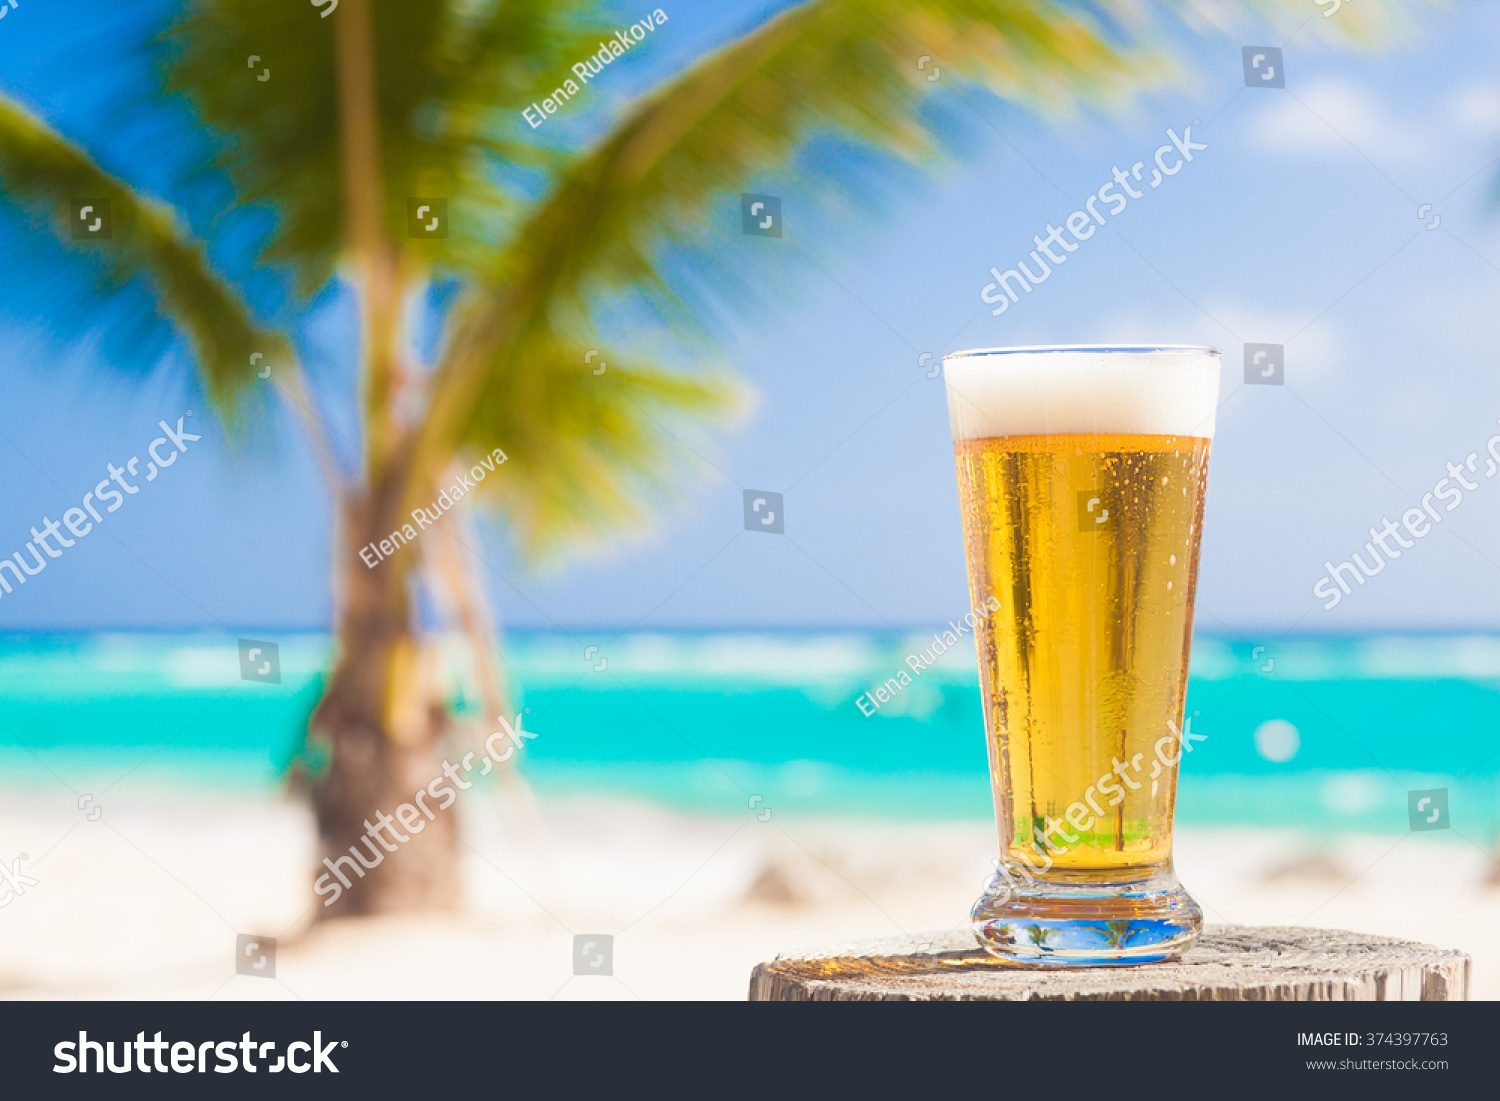 36,844 Beach beers Images, Stock Photos & Vectors | Shutterstock